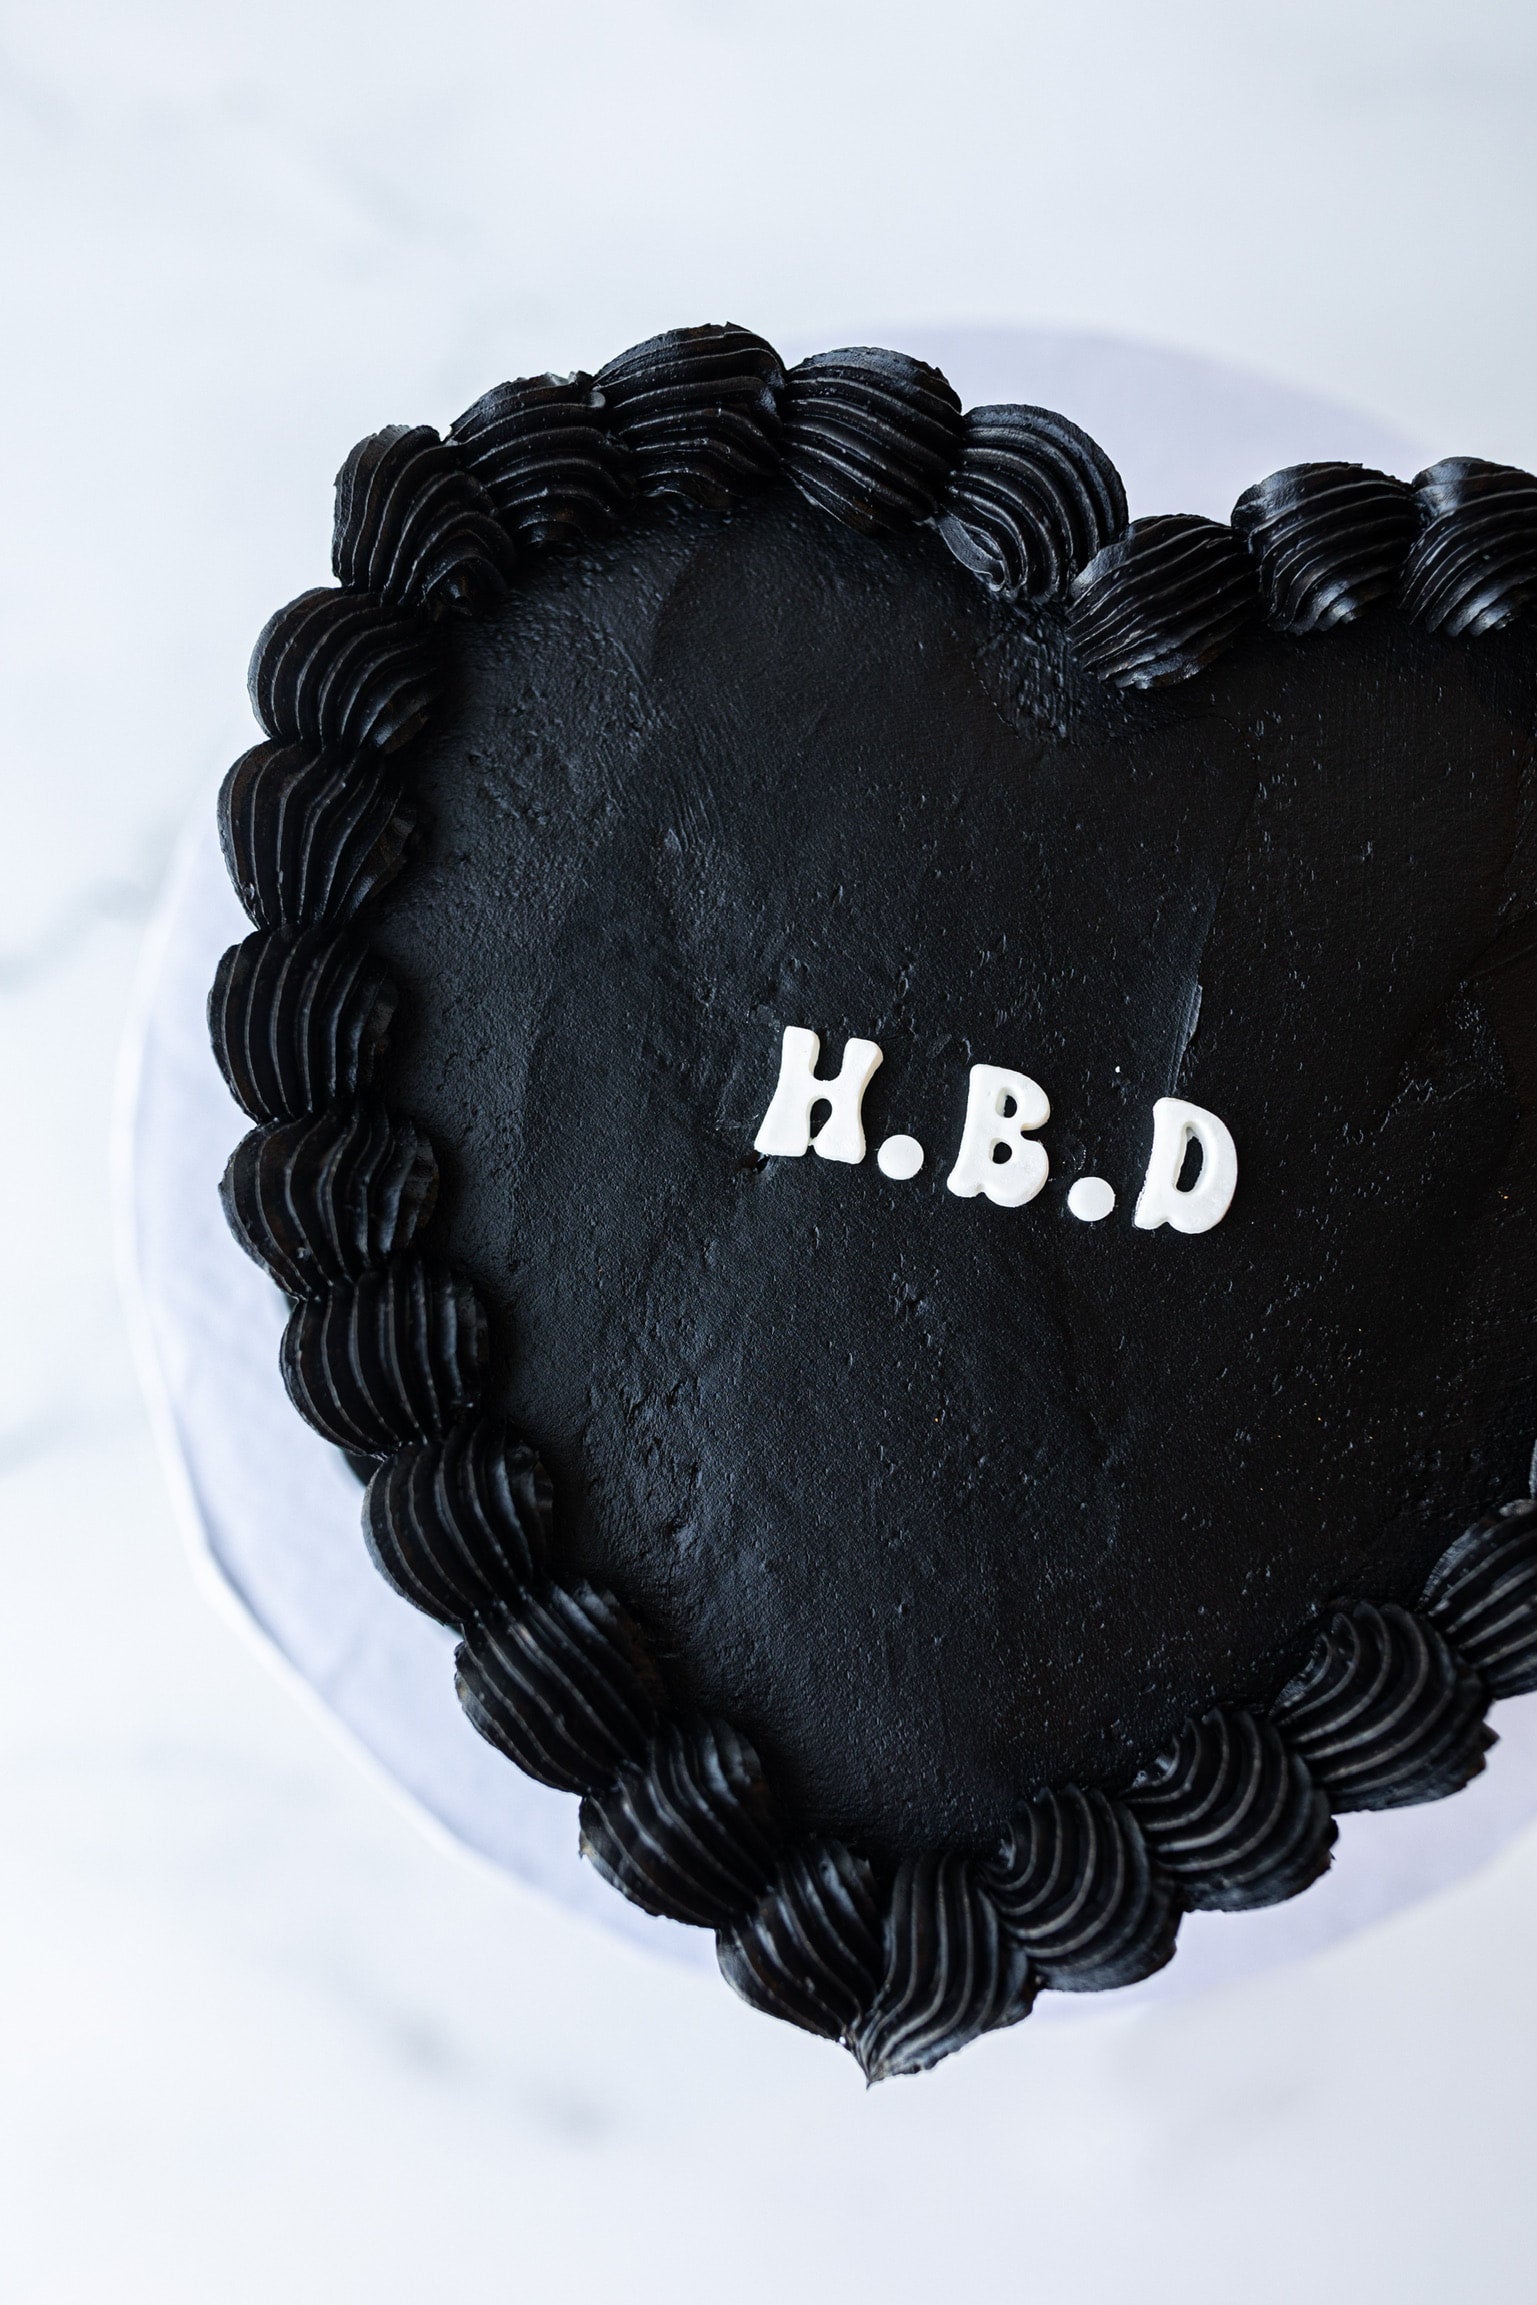 Black Heart Cake – Elisa's Love Bites Dessert Atelier